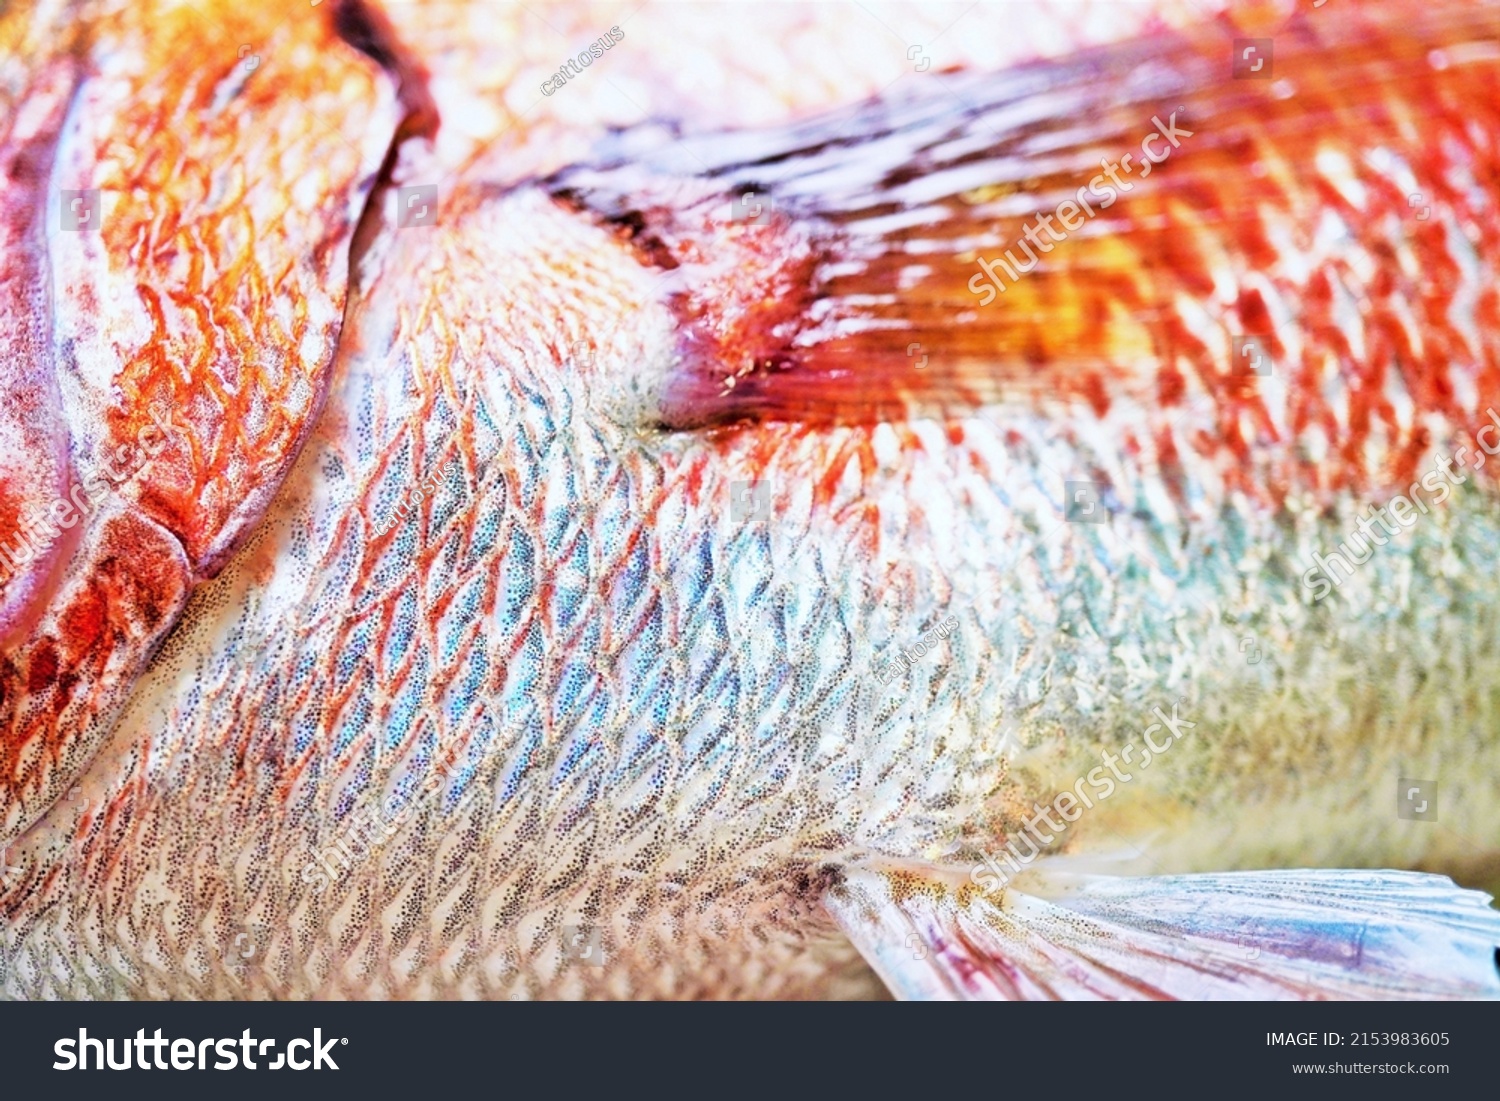 Red sea bream pectoral fin and abdomen up #2153983605